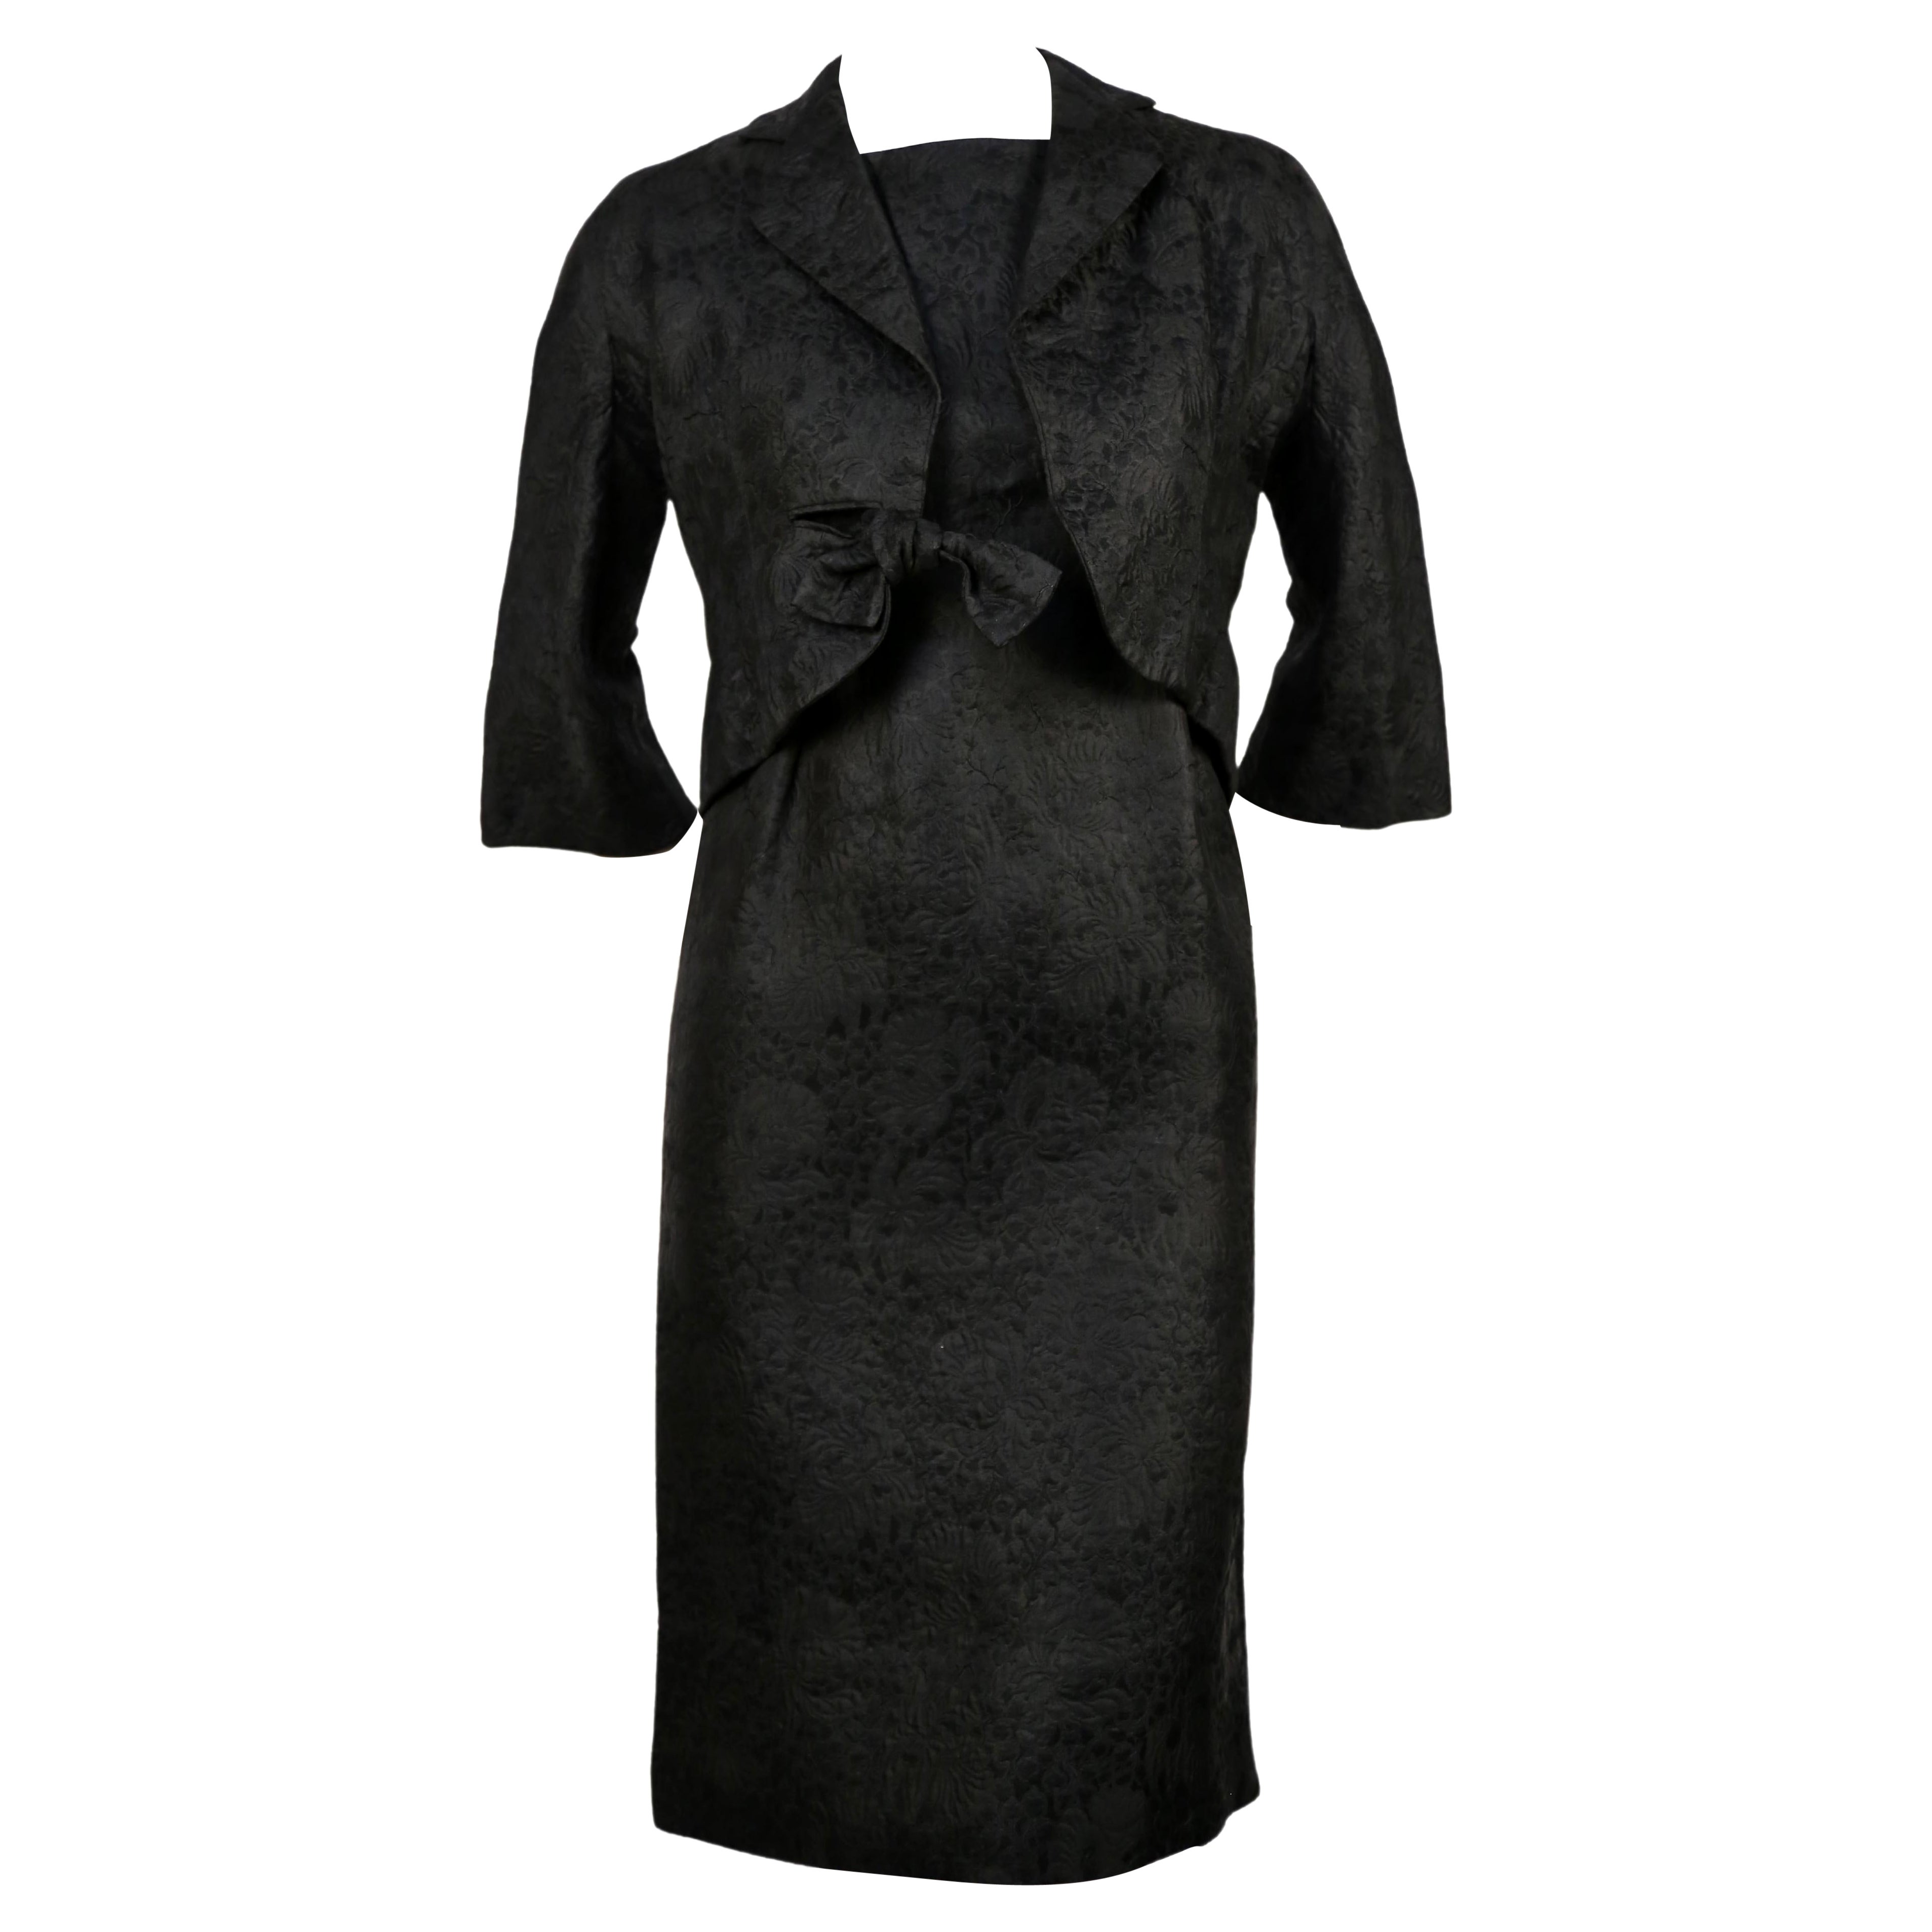 Cristobal Balenciaga Dress - 17 For Sale on 1stDibs